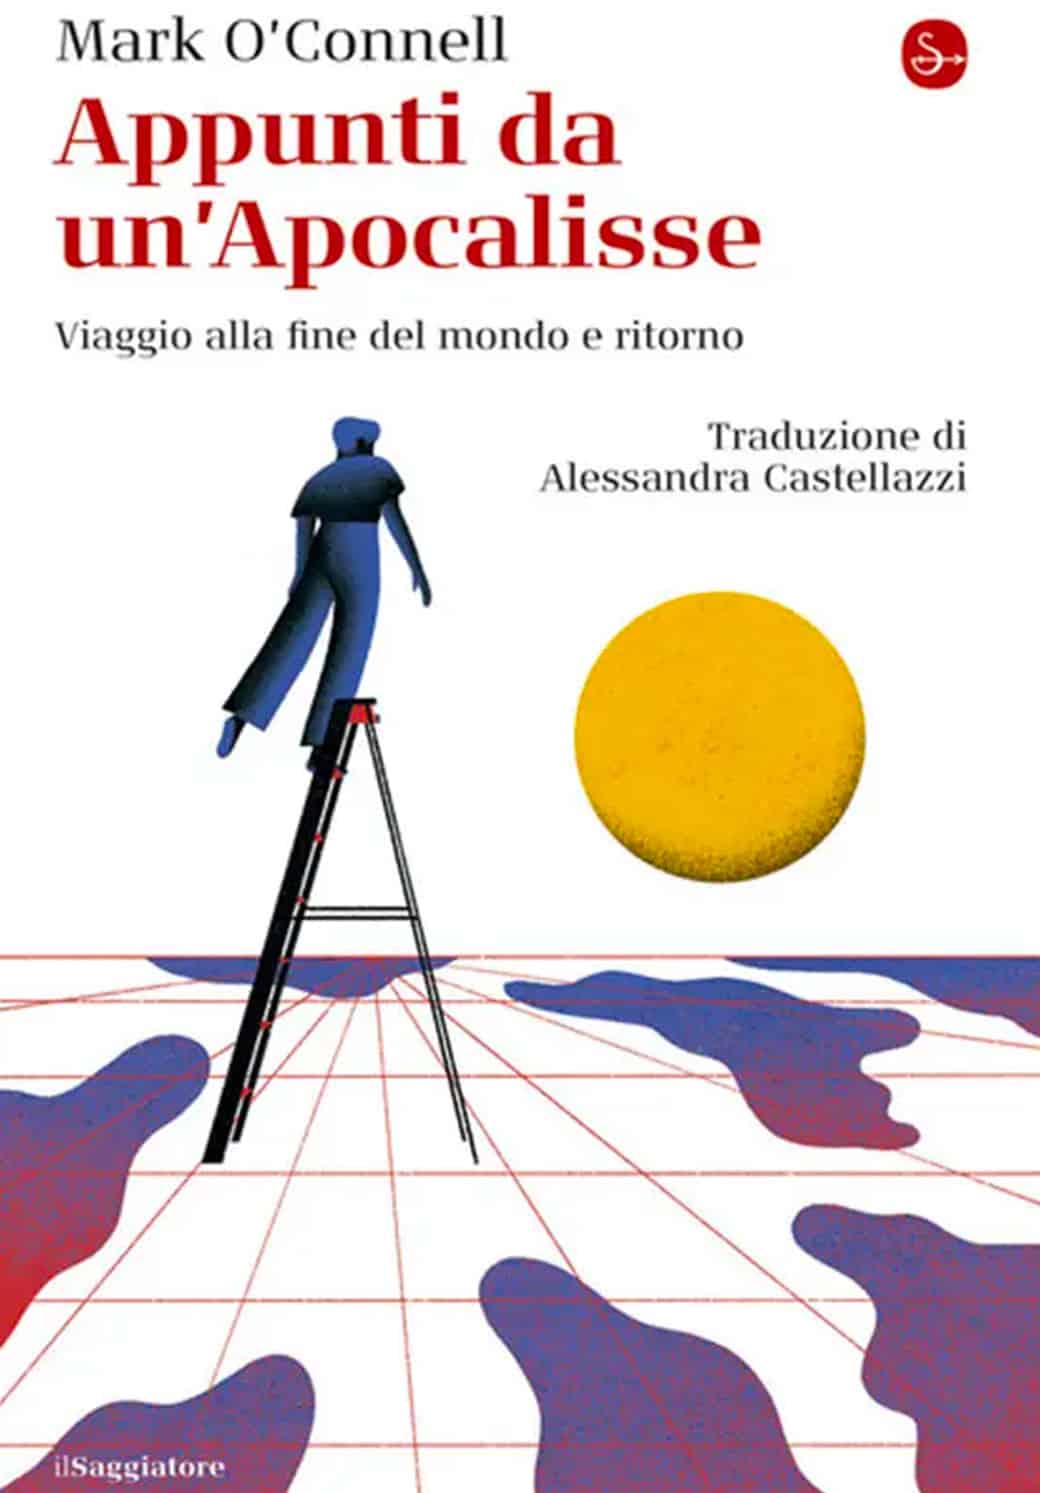 La cover del libro di Mark O'Connell intitolato "Appunti da un'apocalisse". L'illustrazione rappresenta un uomo su una scala che guarda un sole giallo all'orizzonte